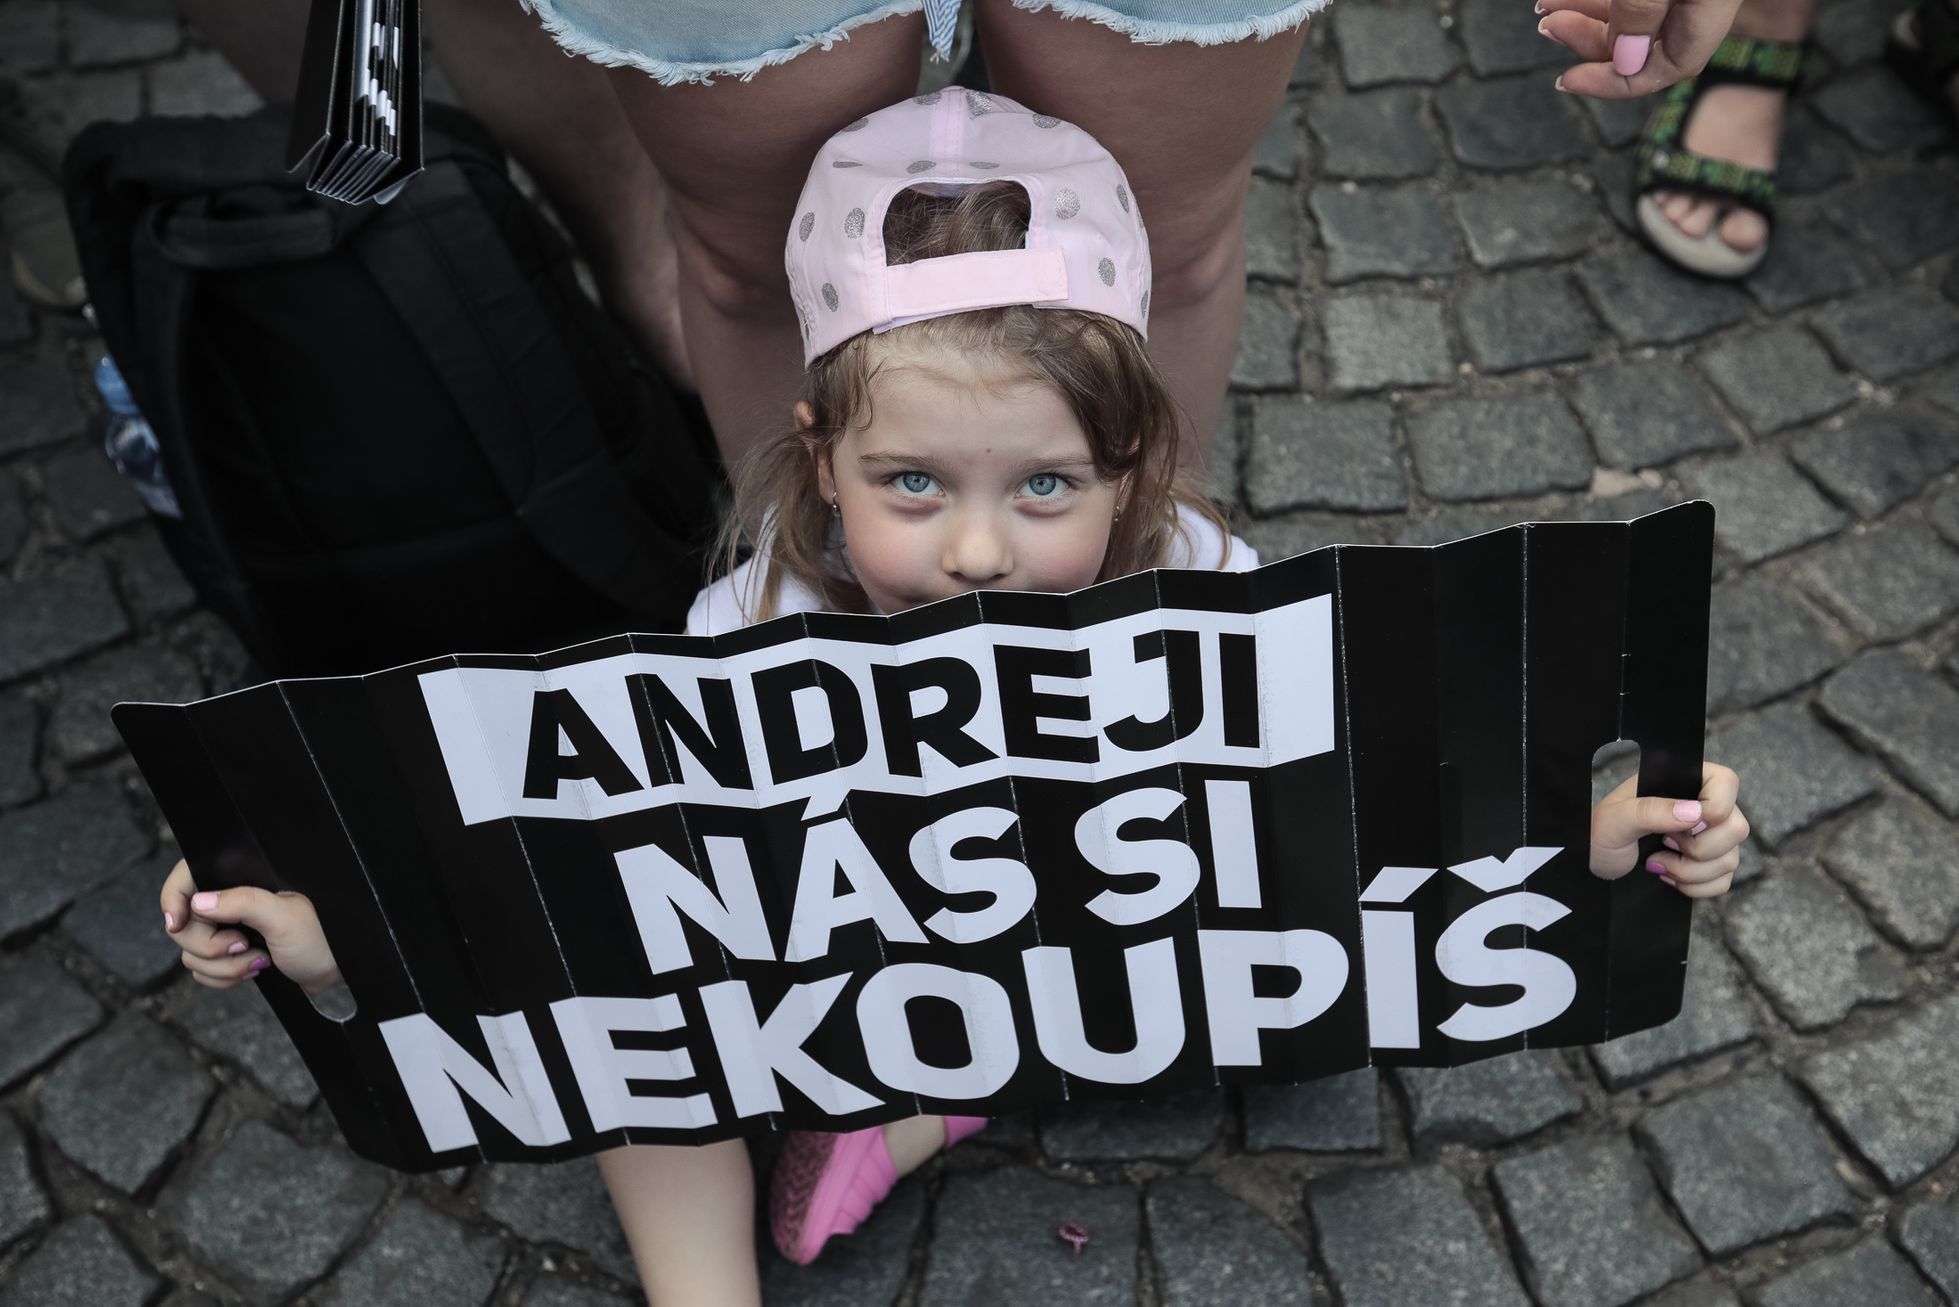 Druhá demonstrace proti Benešové a Babišovi na Václavském náměstí, Milion chvilek, 4. 6. 2019